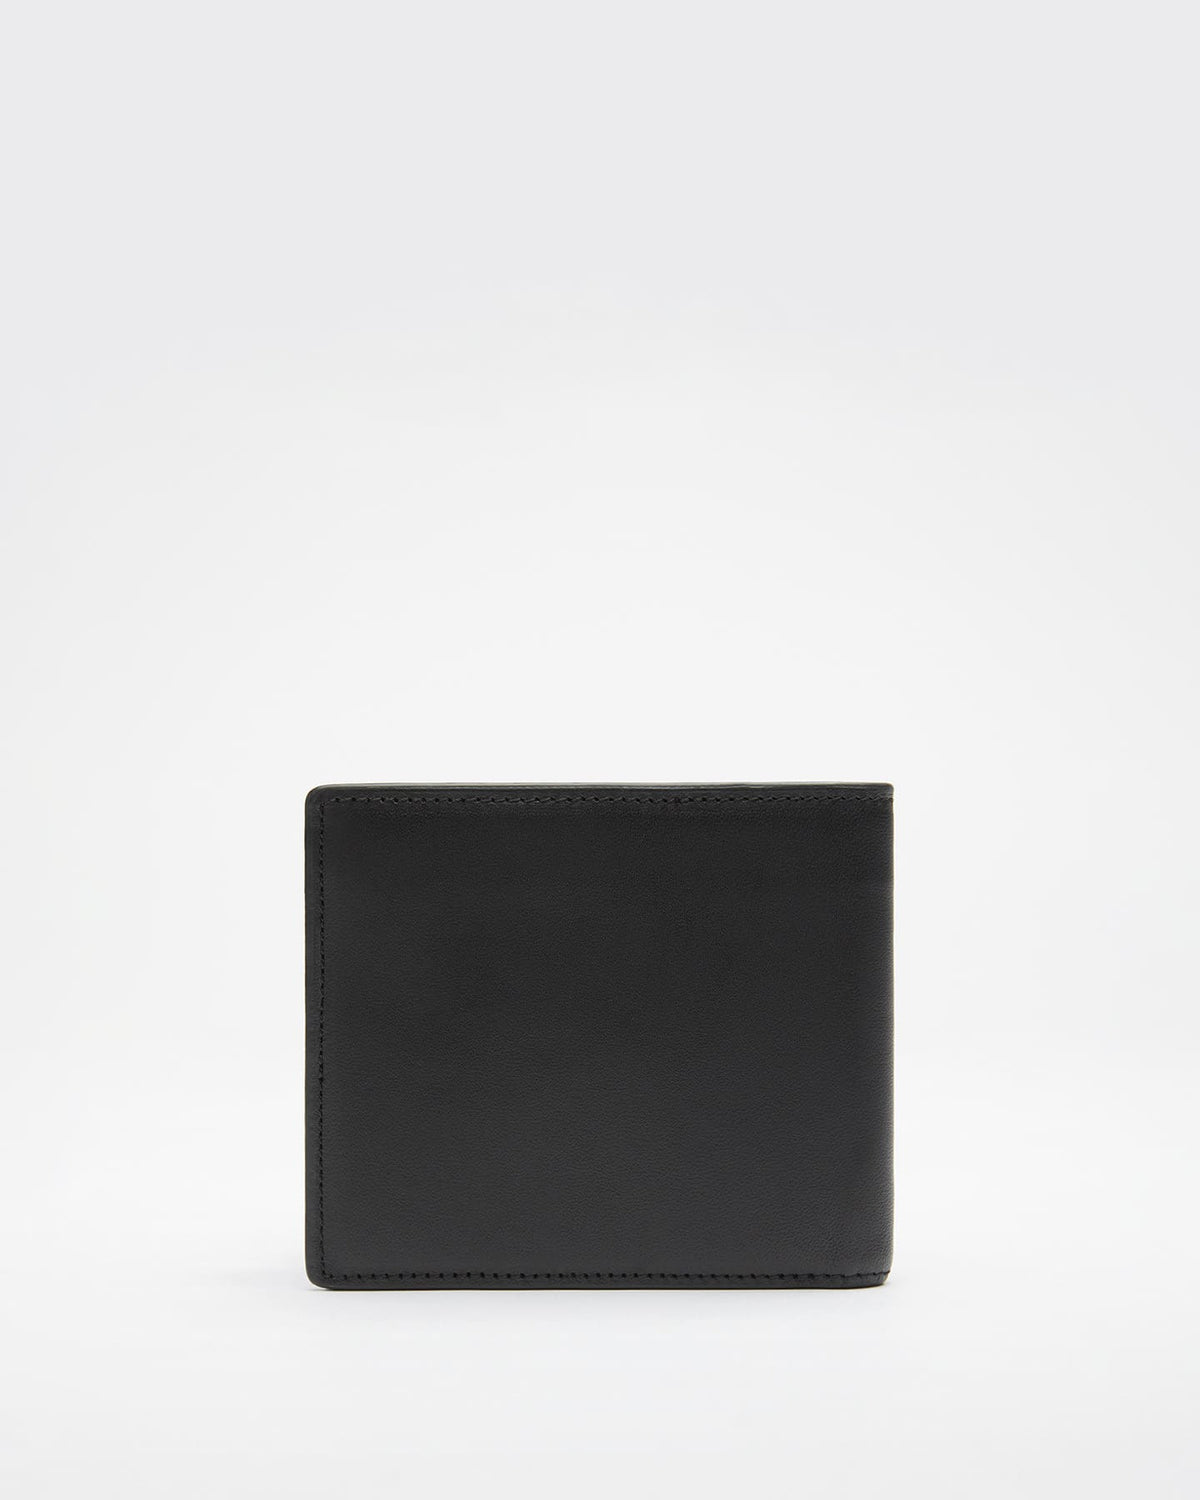 Benin 2.0 Leather Bi-Fold Wallet